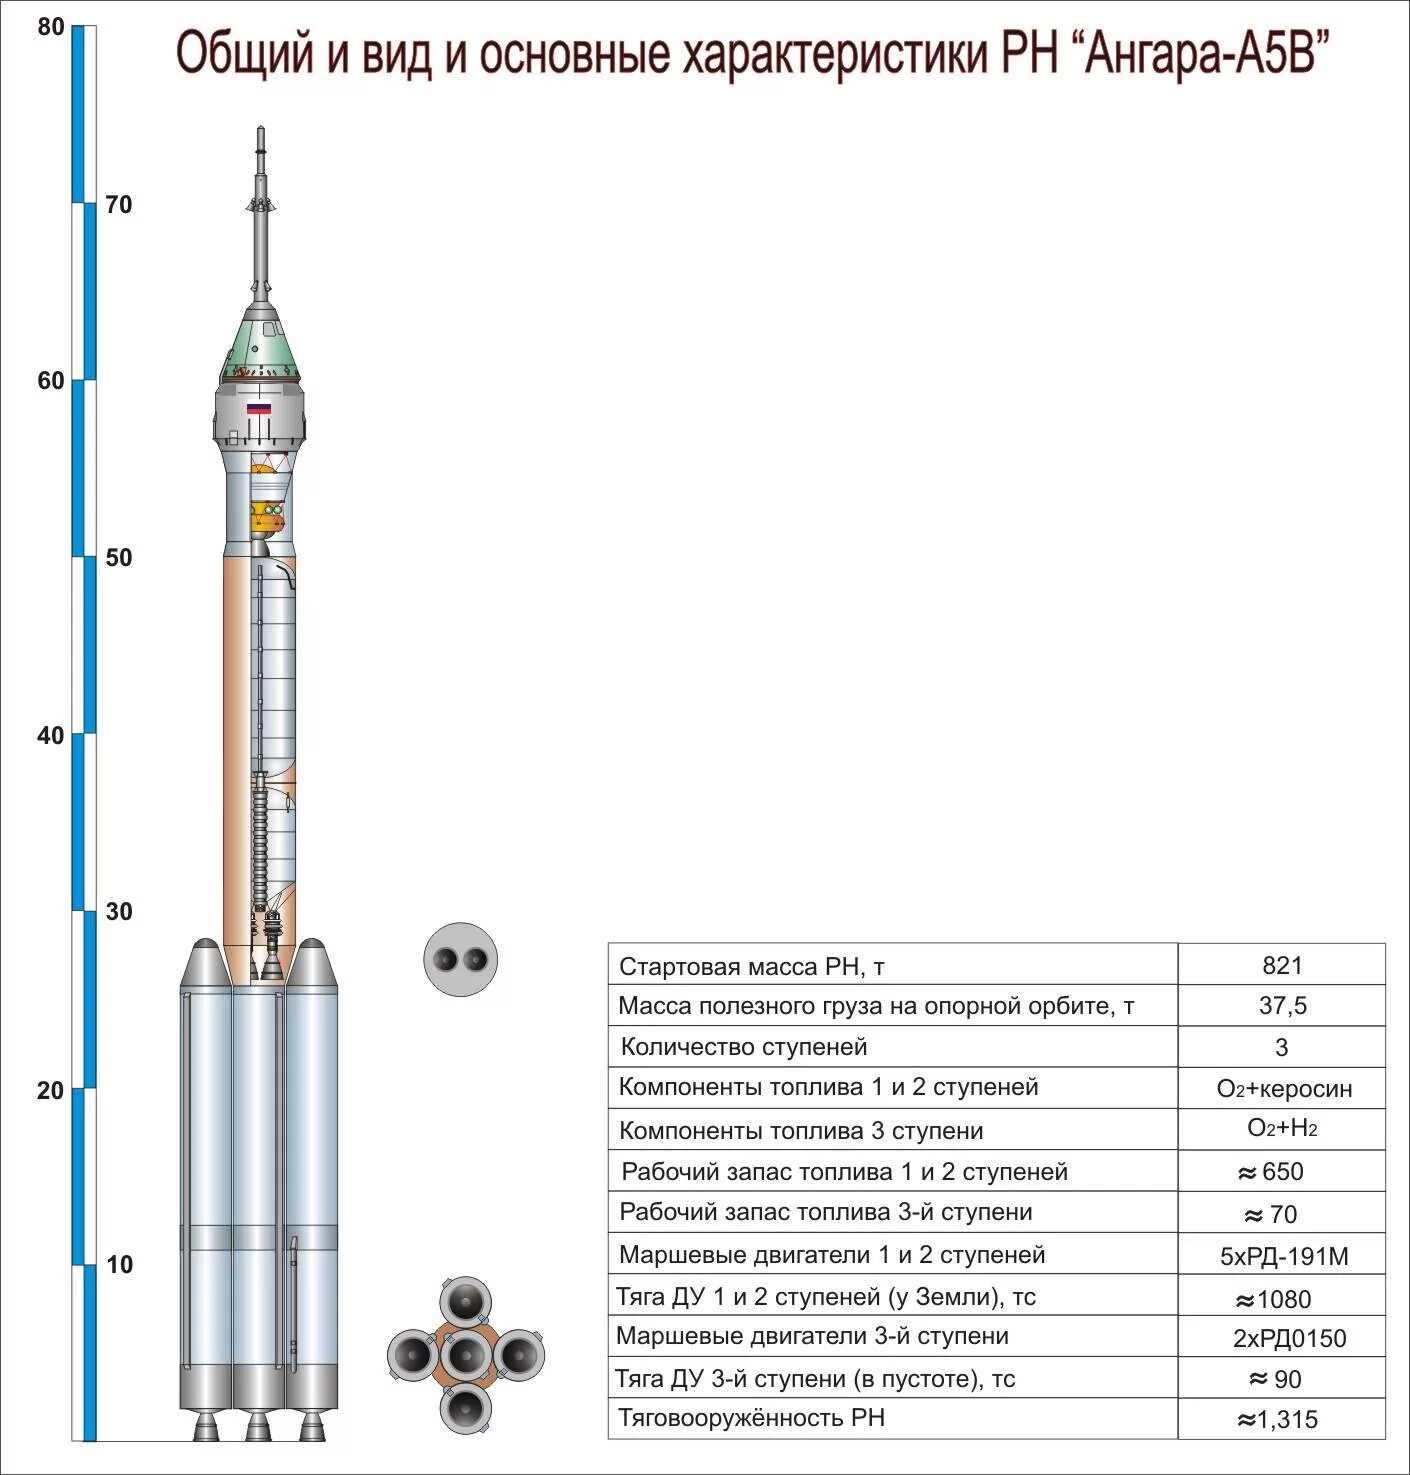 Ракета-носитель "Ангара-а5". Ангара 1.2 ракета-носитель чертеж. Ракета-носитель Ангара чертеж. Ракета носитель Ангара а5 чертеж. Ангара а5 размеры